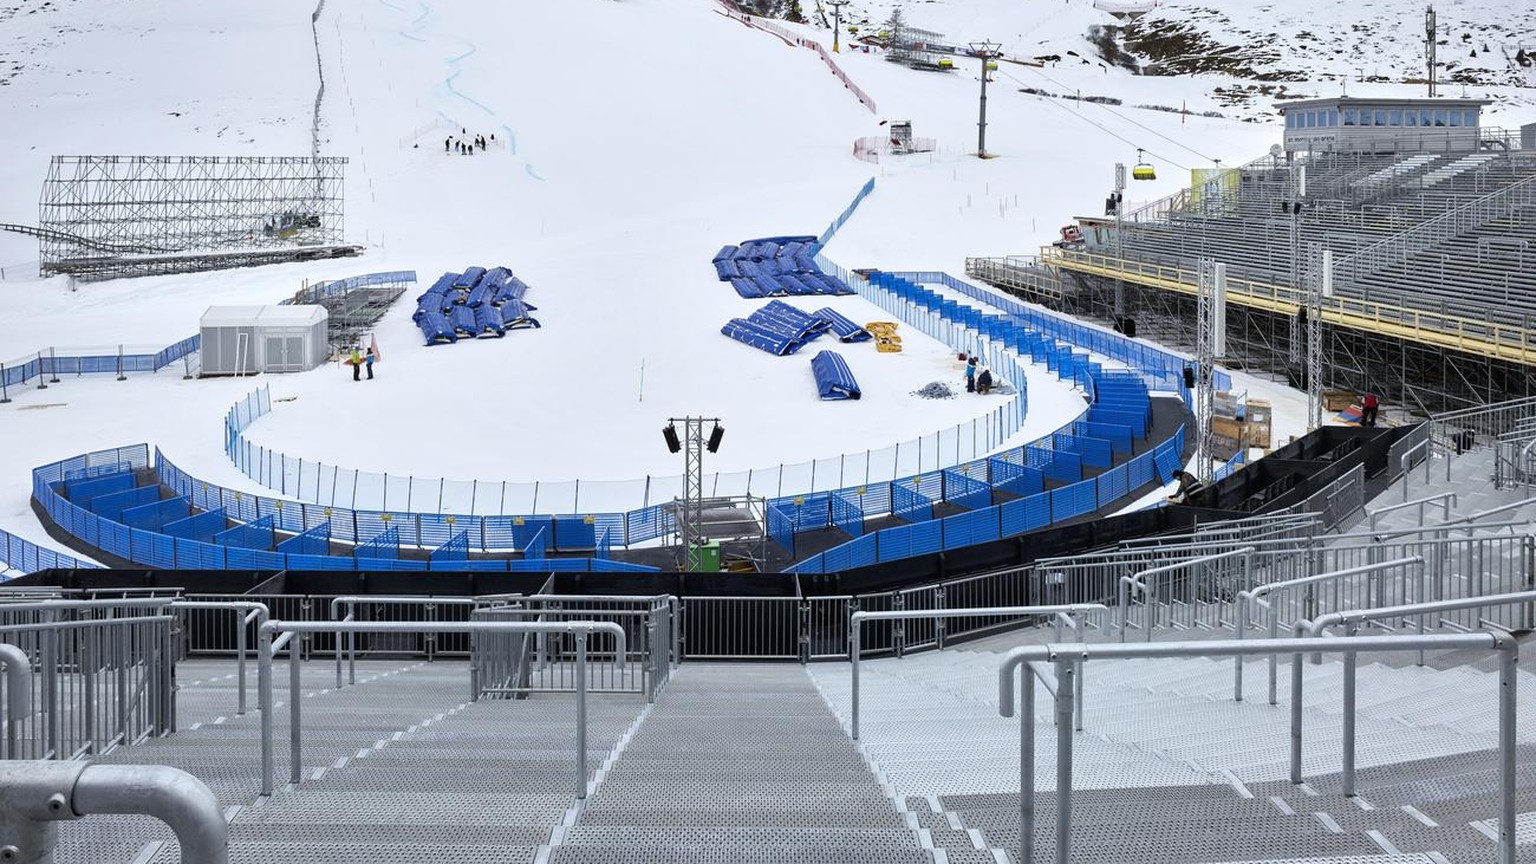 Finish area and grandstand of the 2017 FIS Alpine World Ski Championships, in St. Moritz, Switzerland, on January 30, 2017. (KEYSTONE/Christian Beutler)

Das Zielgelaende und die Haupttribuene der Ski ...